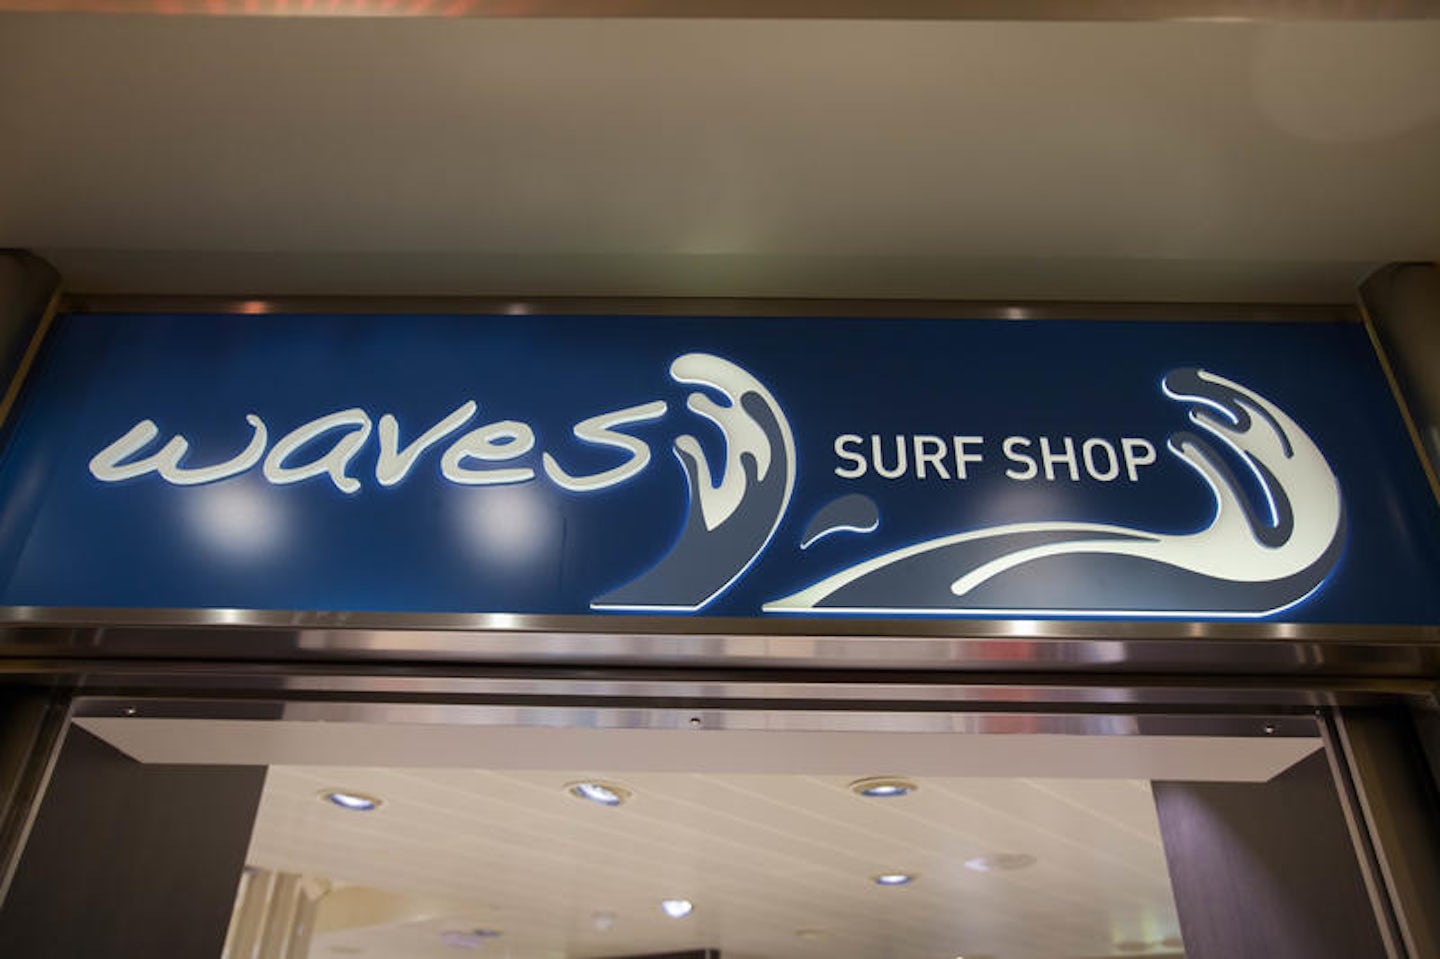 Waves Surf Shop on Carnival Breeze